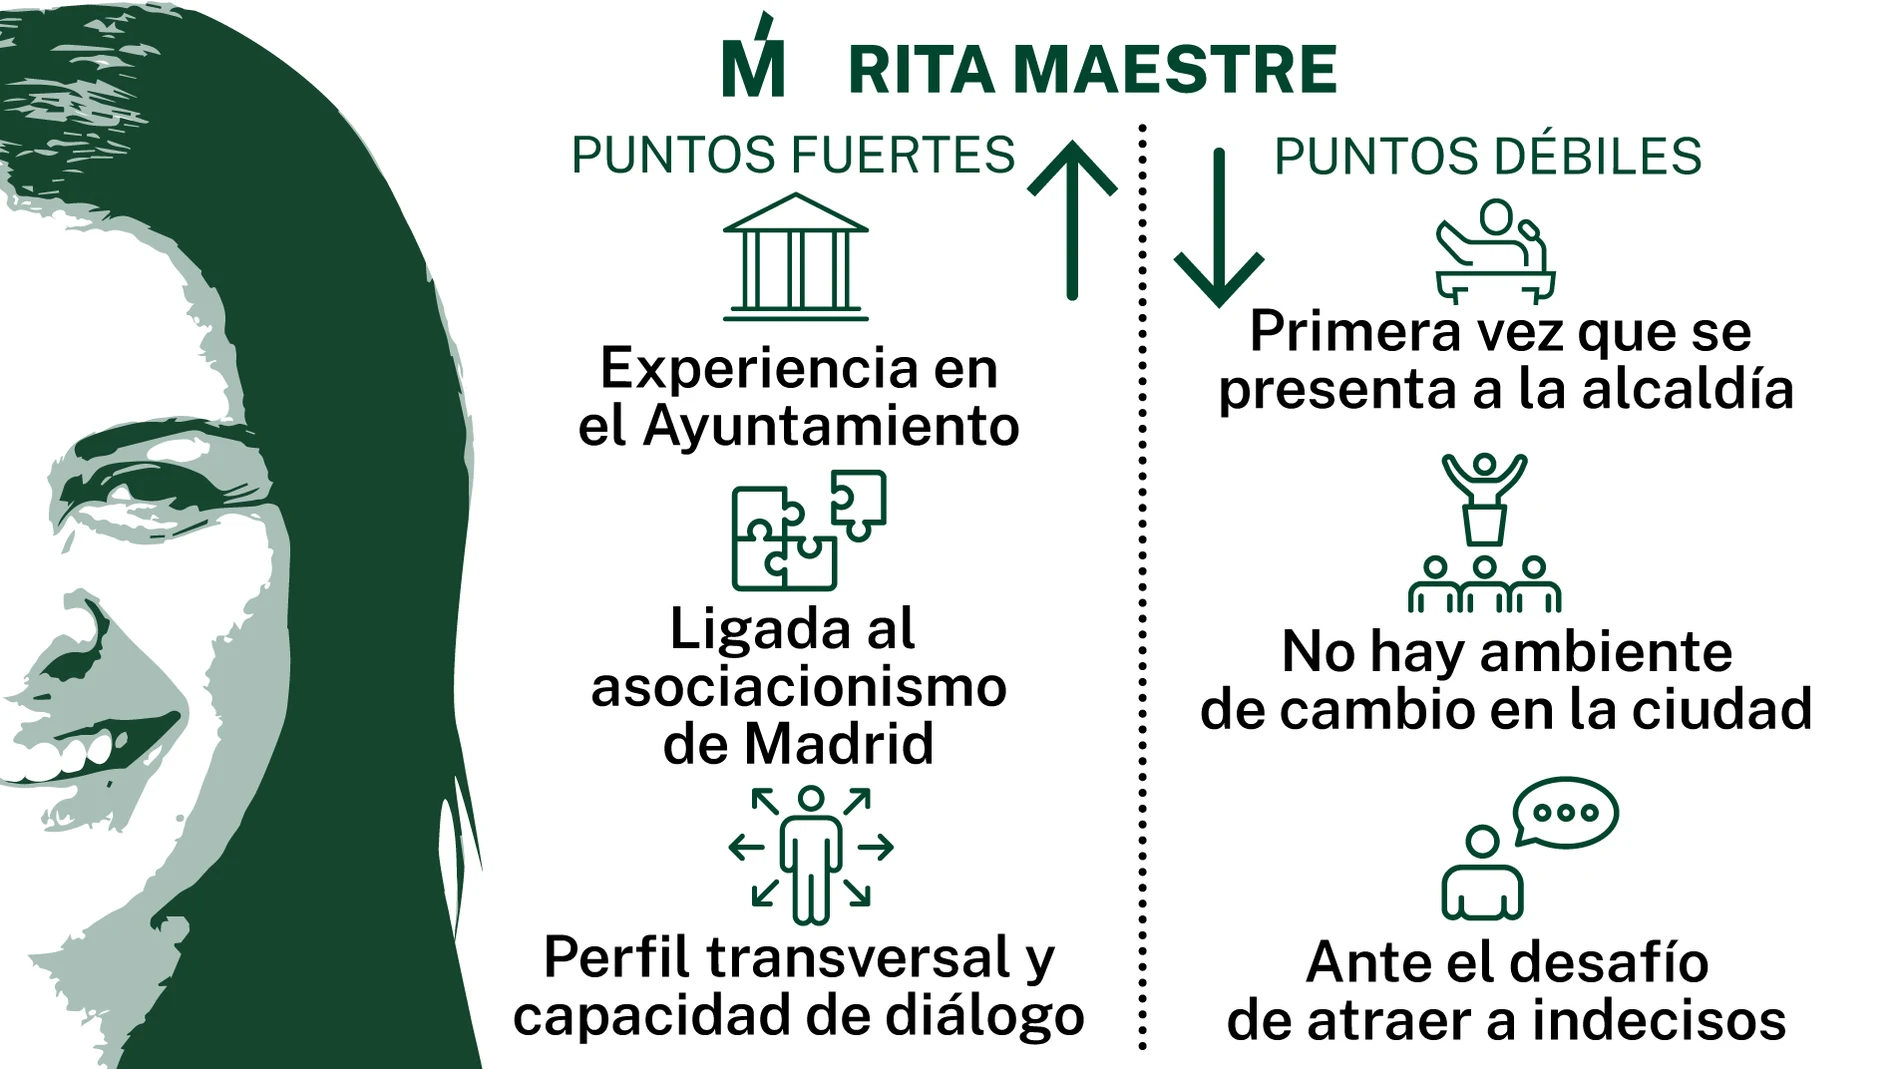 Rita Maestre +M